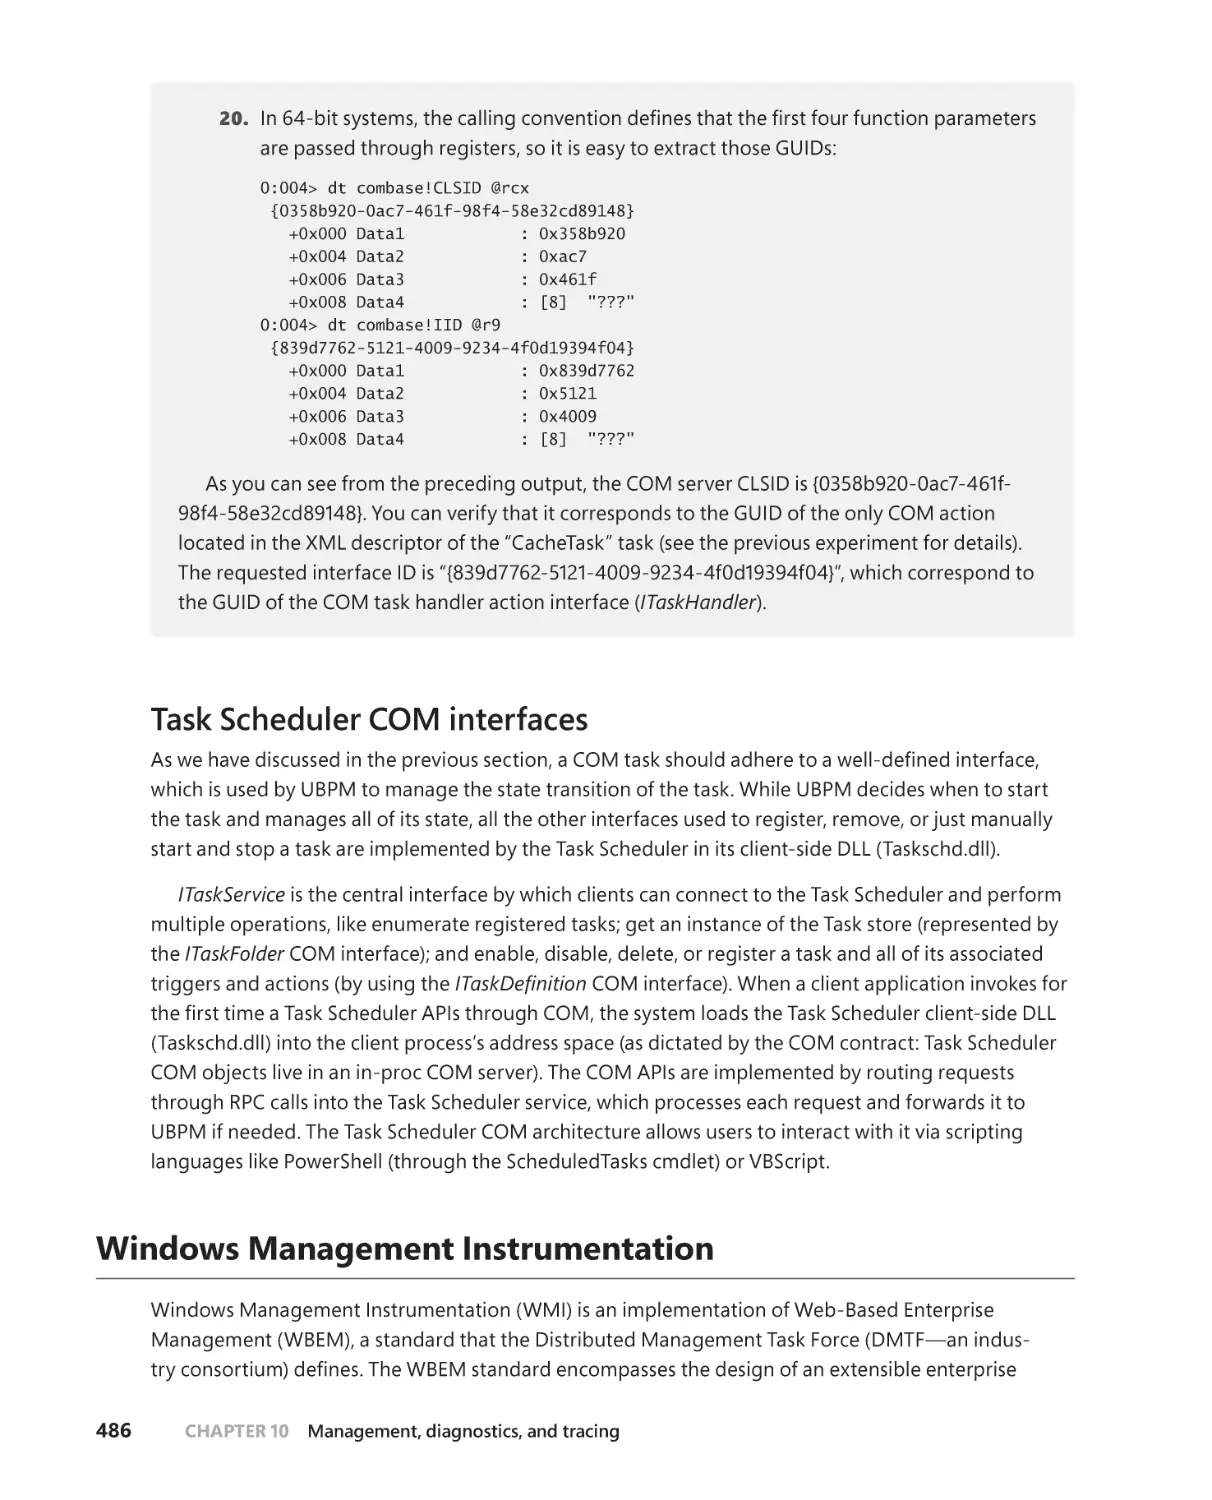 Task Scheduler COM interfaces
Windows Management Instrumentation